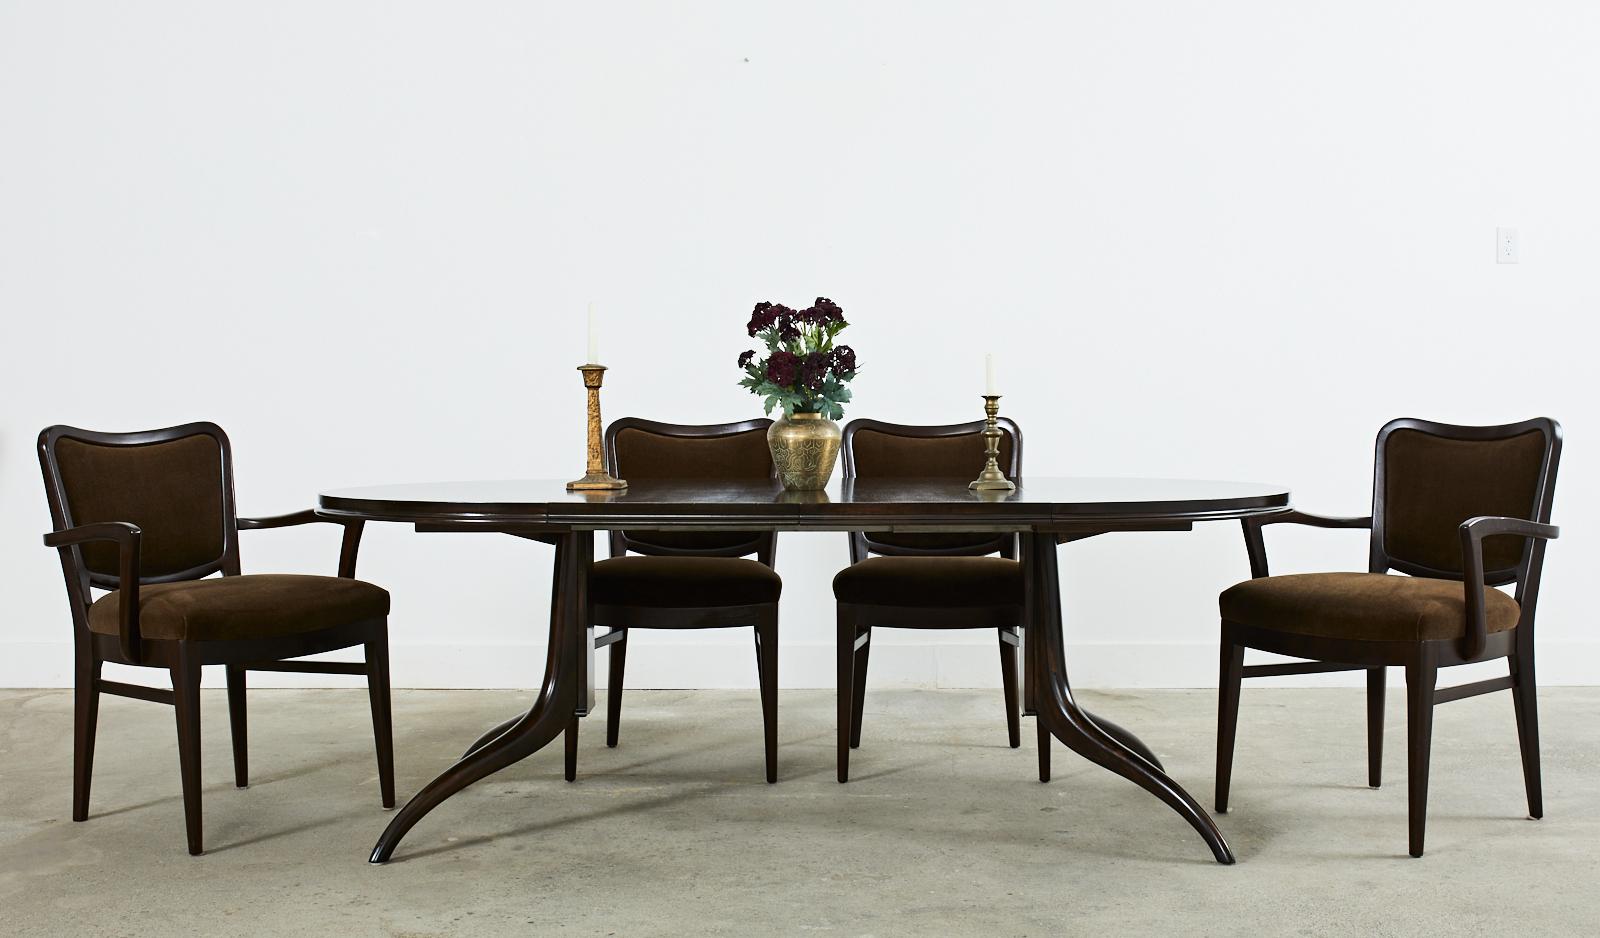 Élégante table à manger moderne du milieu du siècle conçue par T.H. Robsjohn-Gibbings pour Widdicomb Furniture Co. La table comporte deux feuilles de 18 pouces qui prolongent le plateau de 44,5 pouces de diamètre à une forme ovale ou de piste de